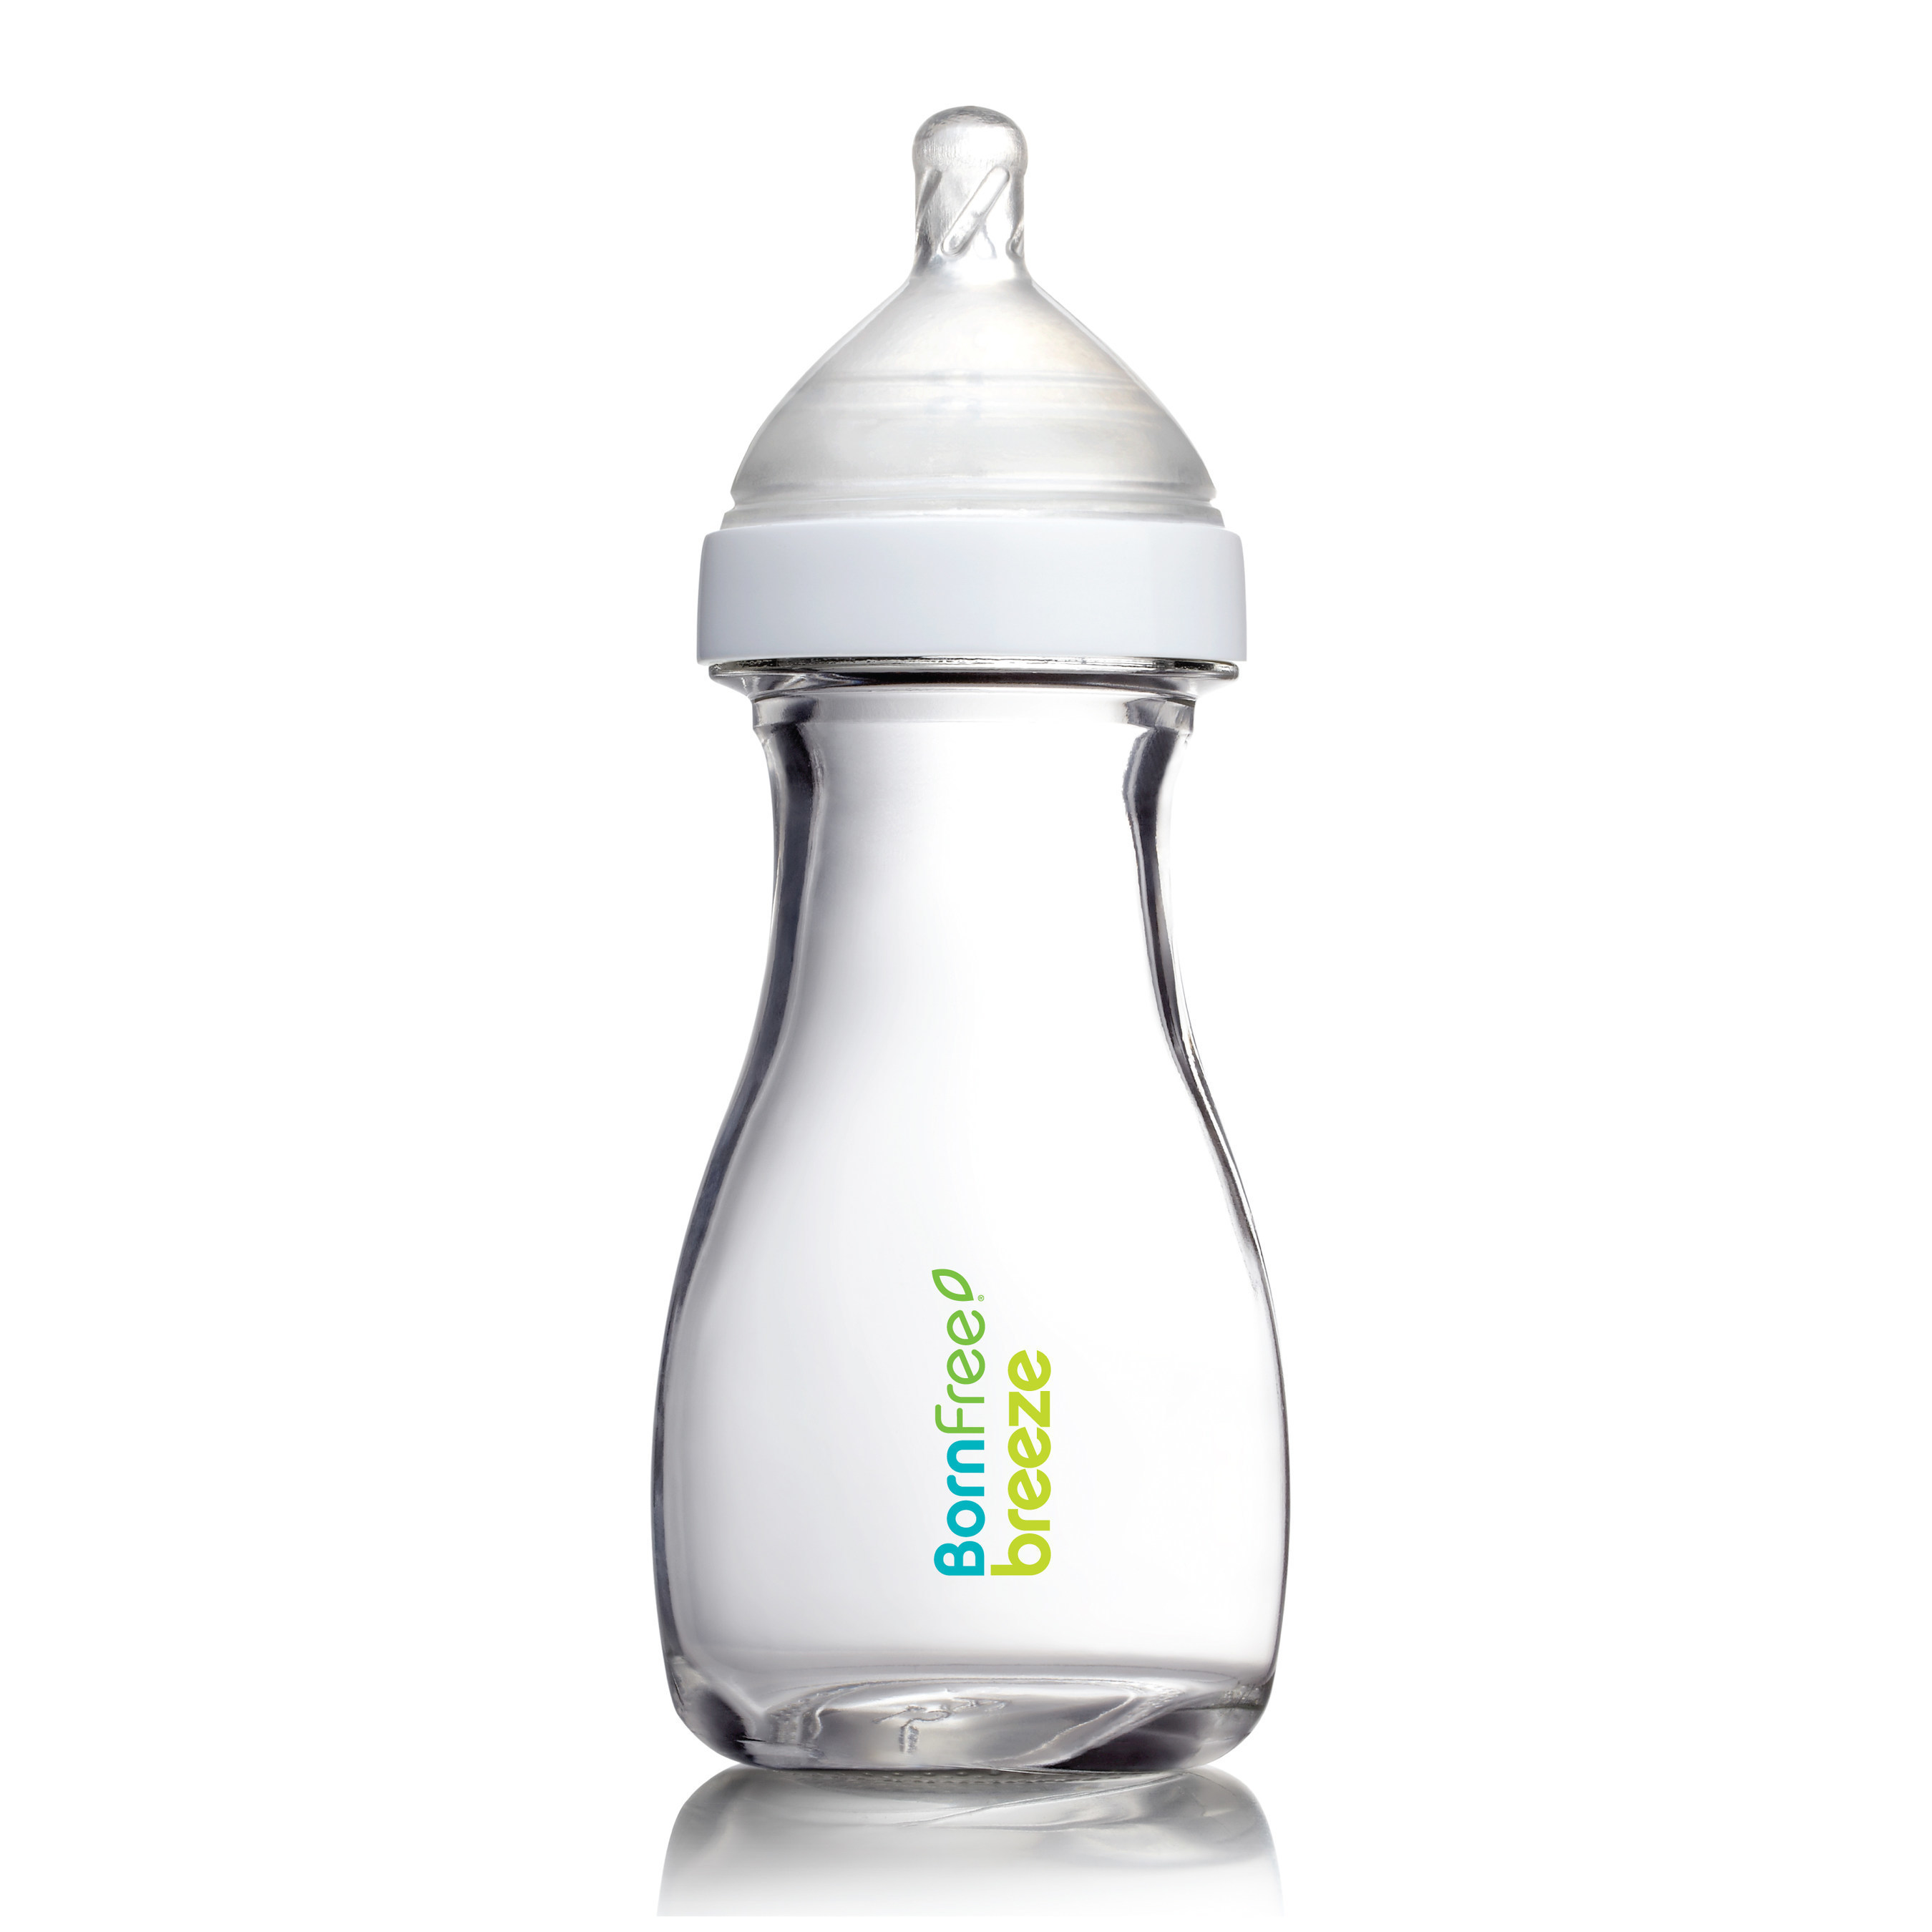 bpa free baby bottles